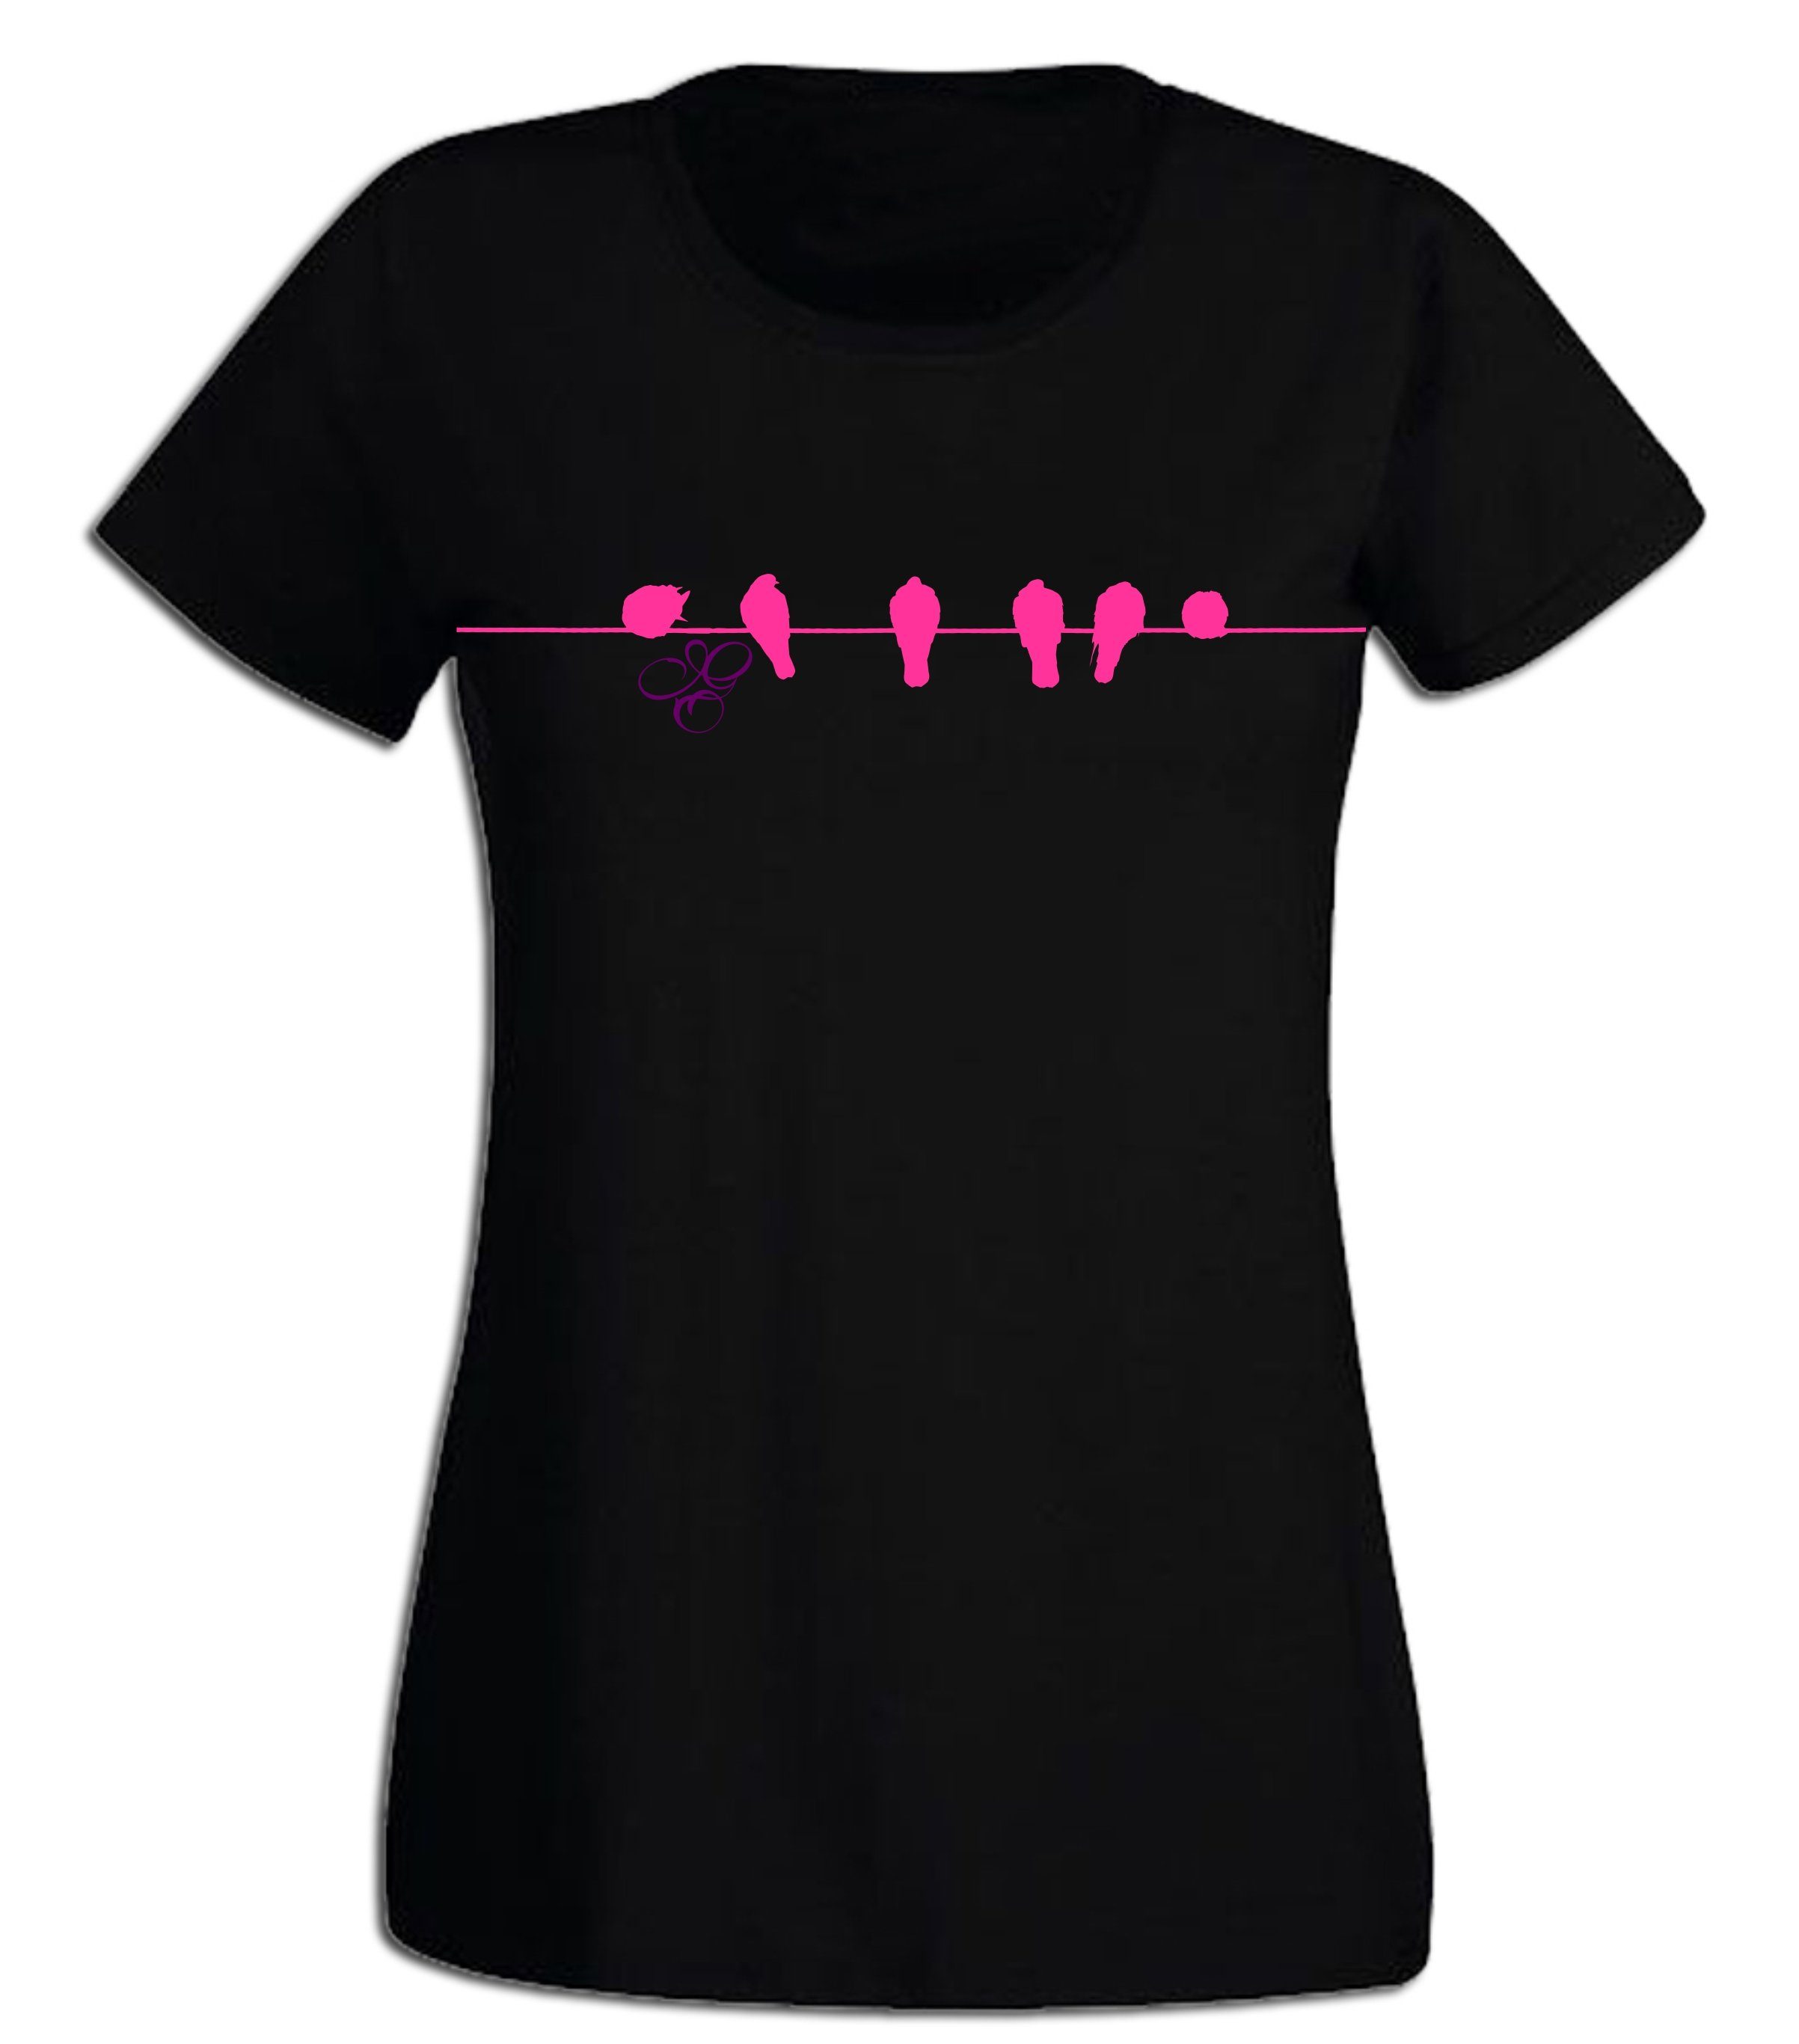 G-graphics T-Shirt Damen T-Shirt - Birds on a line Pink-Purple-Collection, mit trendigem Frontprint, Slim-fit, Aufdruck auf der Vorderseite, Print/Motiv, für jung & alt